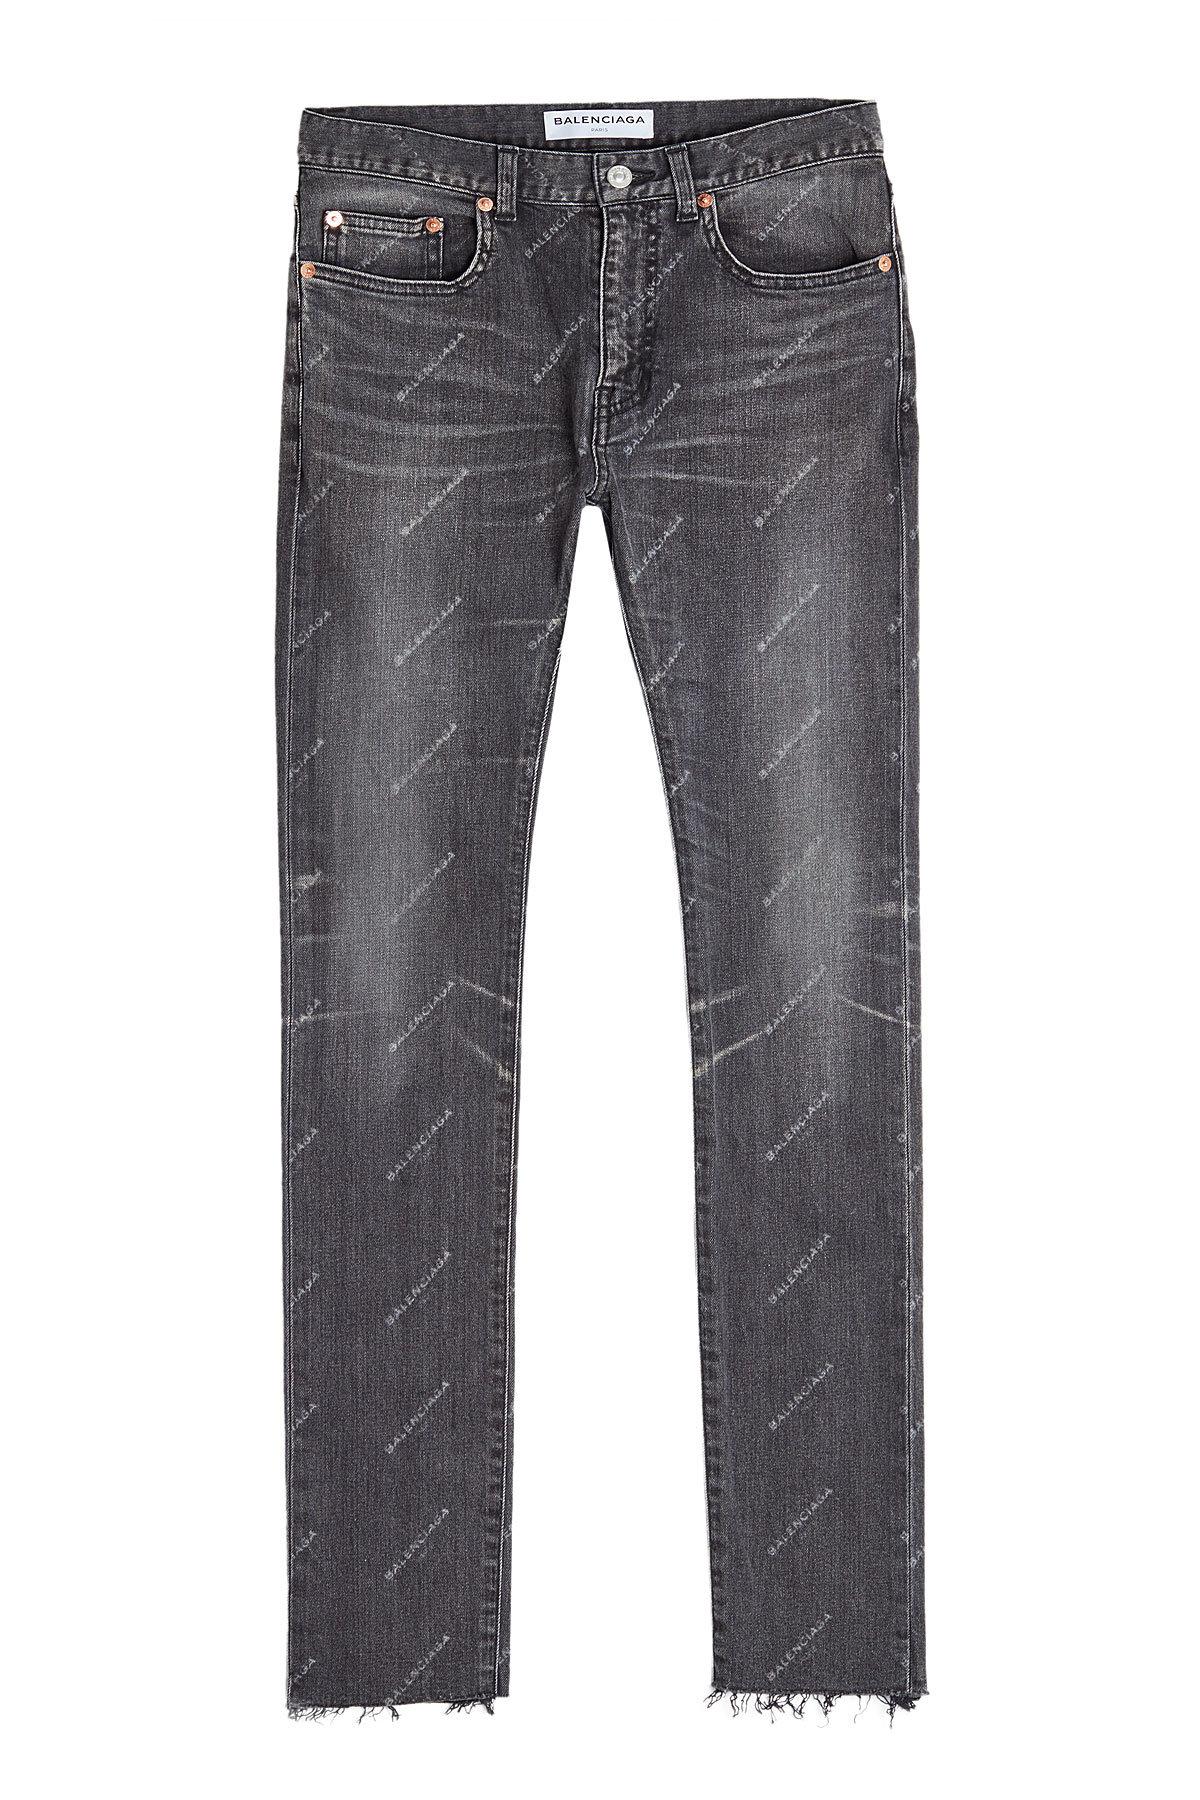 Balenciaga Printed Jeans - Lyst1200 x 1800